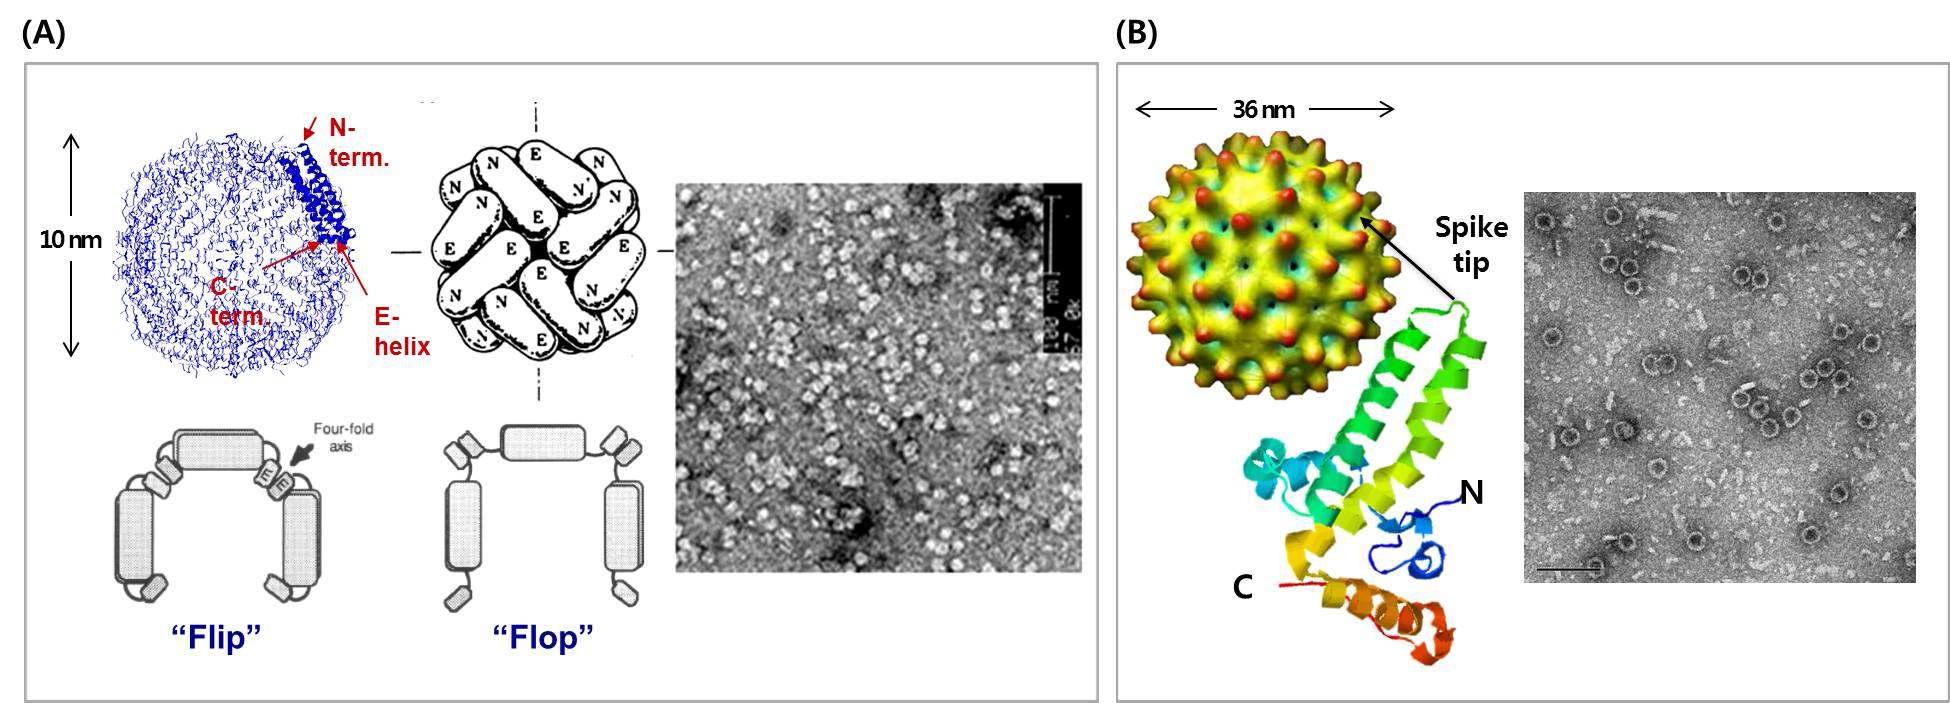 인간 훼리틴 나노입자(A) 및 hepatitis B virus core antigen 나노입자(B)의 3차원 구조 및 본 연구팀의 단백질 나노입자 발현 시스템을 통해 생산·정제된 각 단백질 나노입자의 TEM 이미지